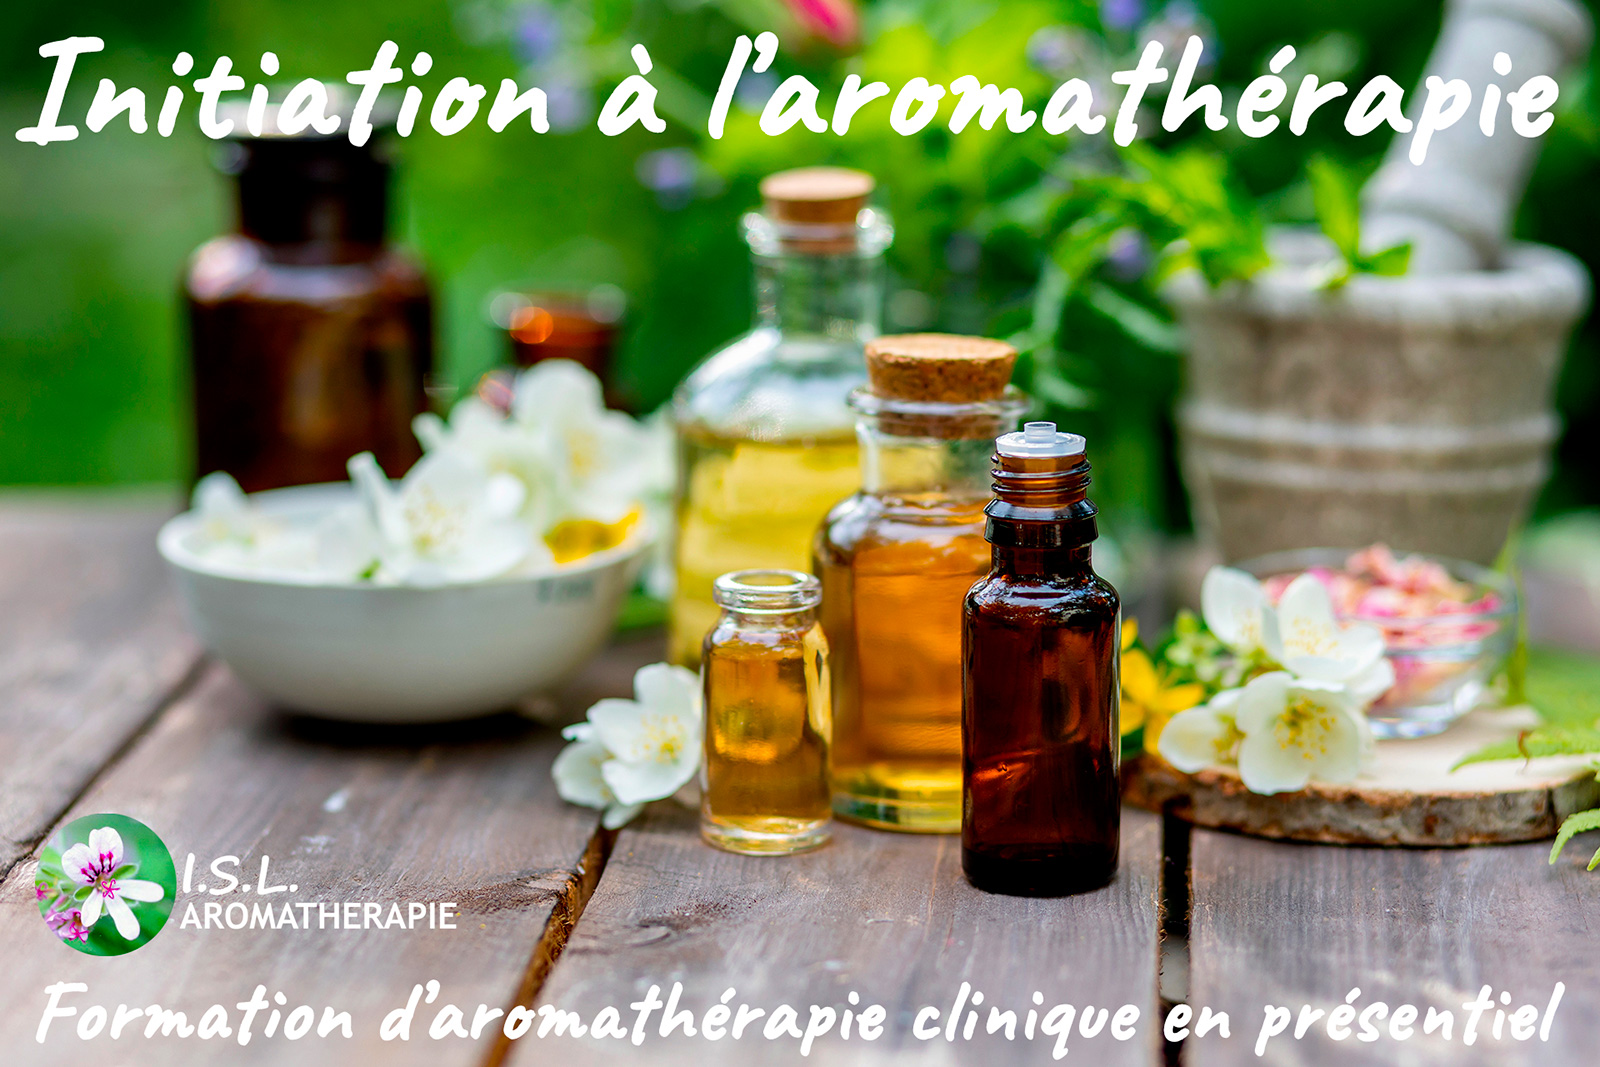 formation initiation a l aromatherapie clinique en presentiel